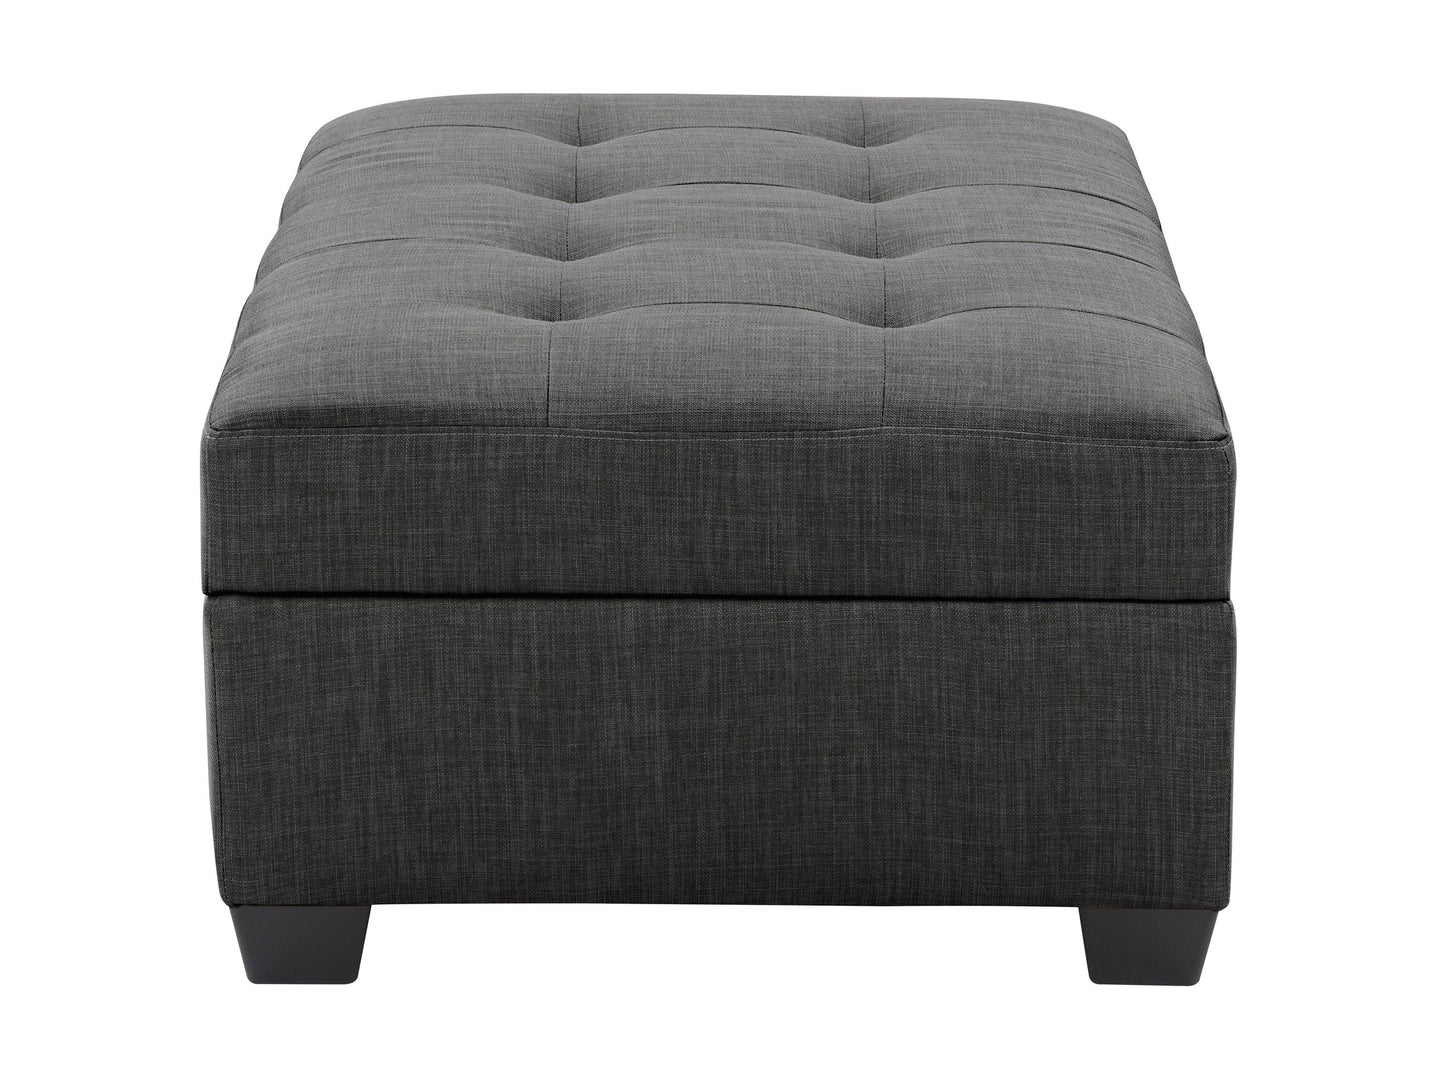 grey Tufted Storage Bench Antonio Collection product image by CorLiving#color_antonio-grey